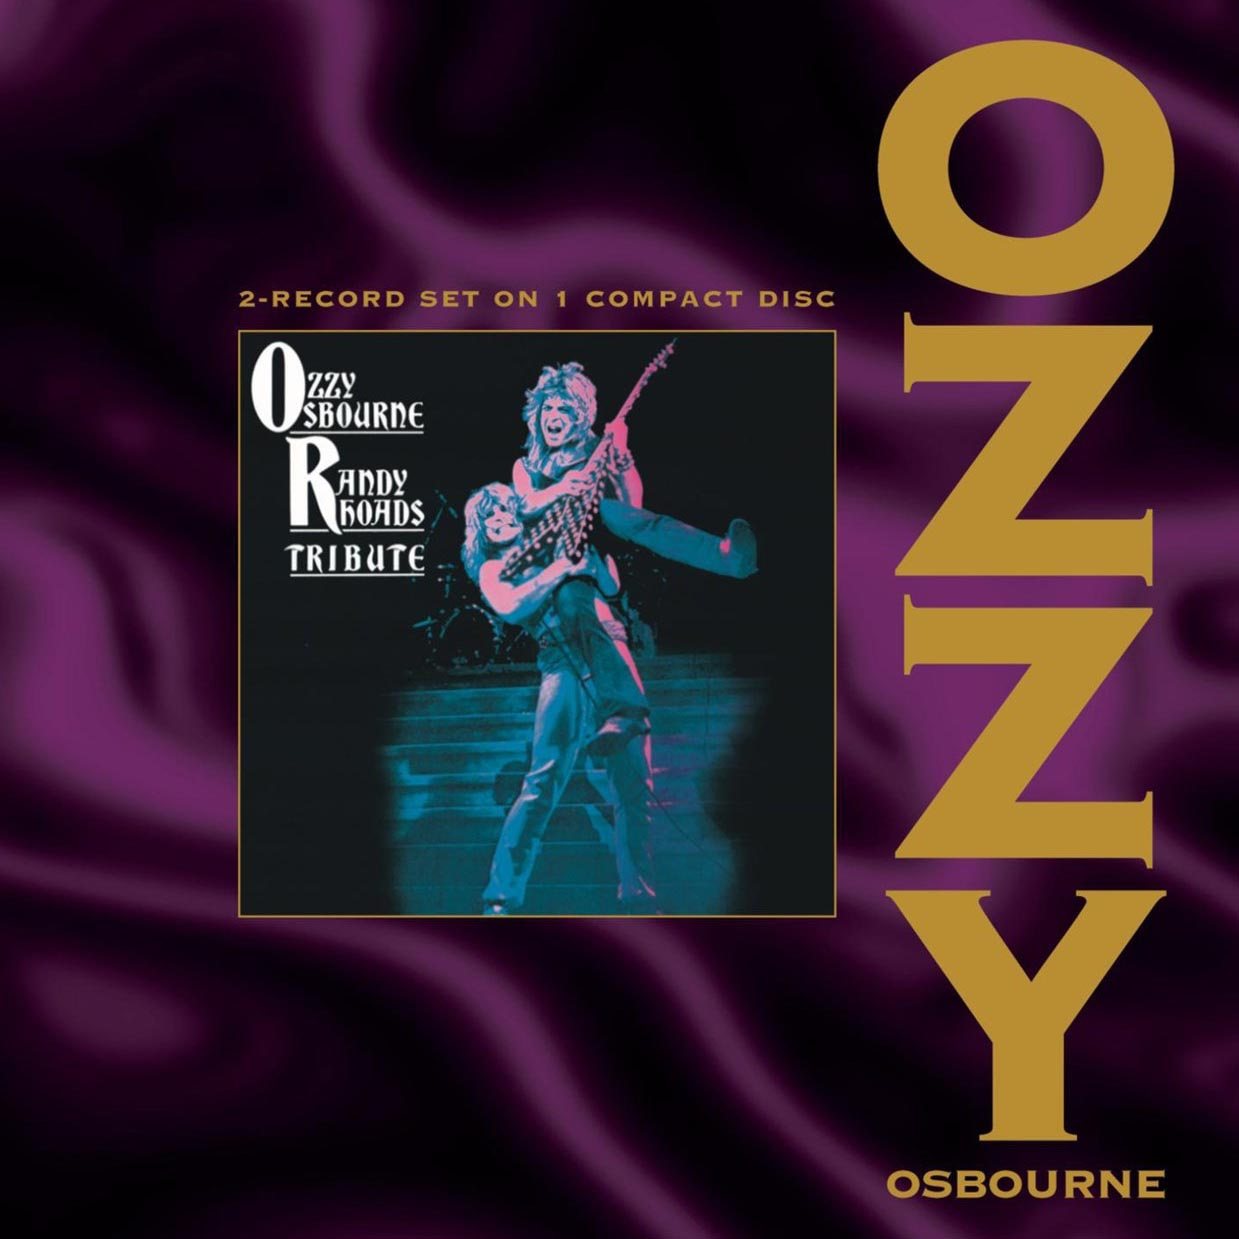 Accept case. Ozzy Osbourne 1987. Tribute Оззи Осборн. A Tribute to Ozzy Osbourne. Ordinary man Ozzy Osbourne CD.